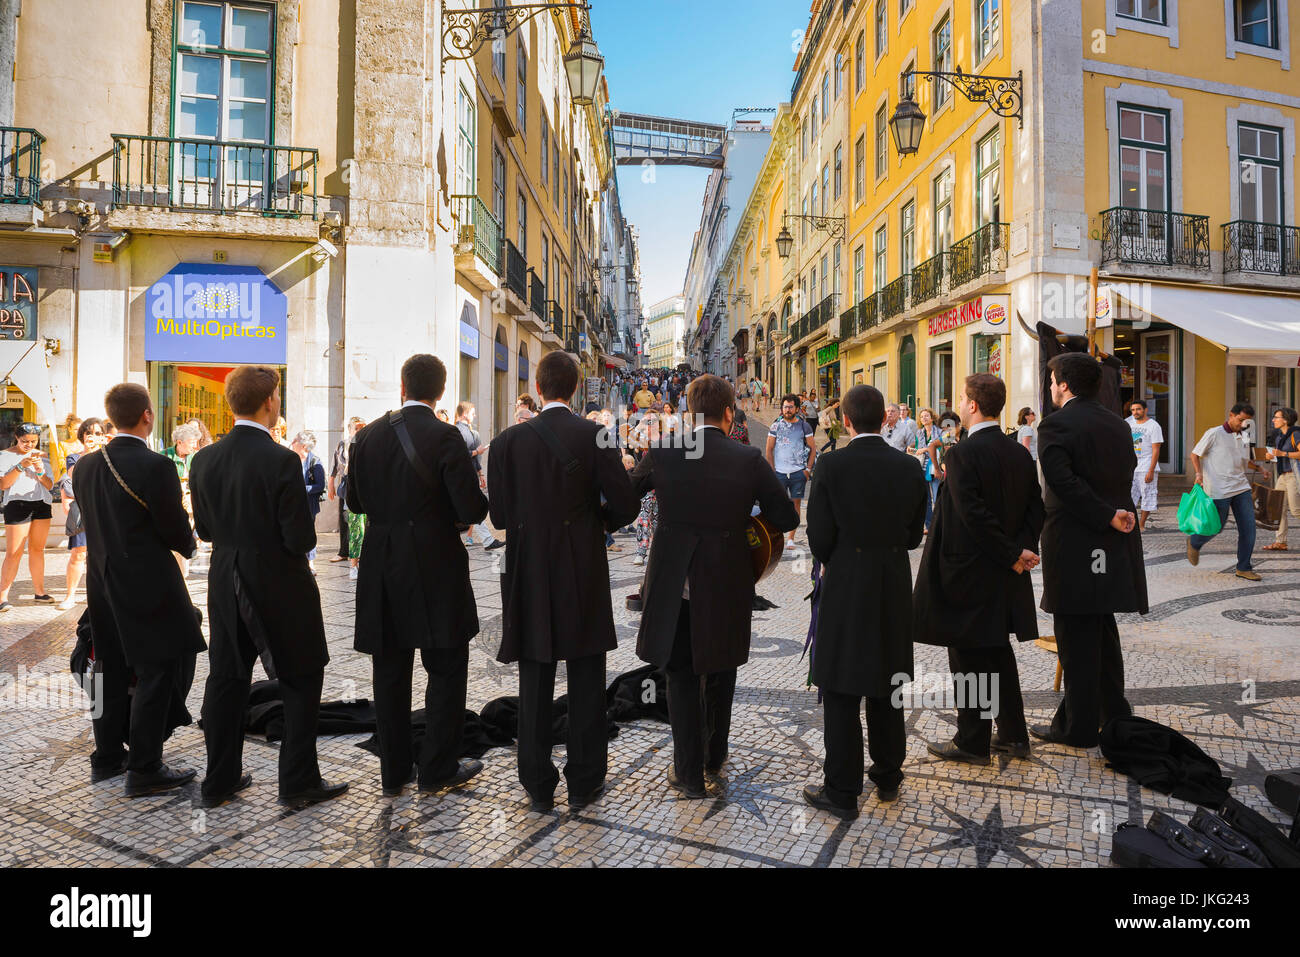 La musique de rue de Lisbonne, une bande de musiciens étudiant les passants dans une rue du quartier de Baixa de Lisbonne, Portugal. Banque D'Images